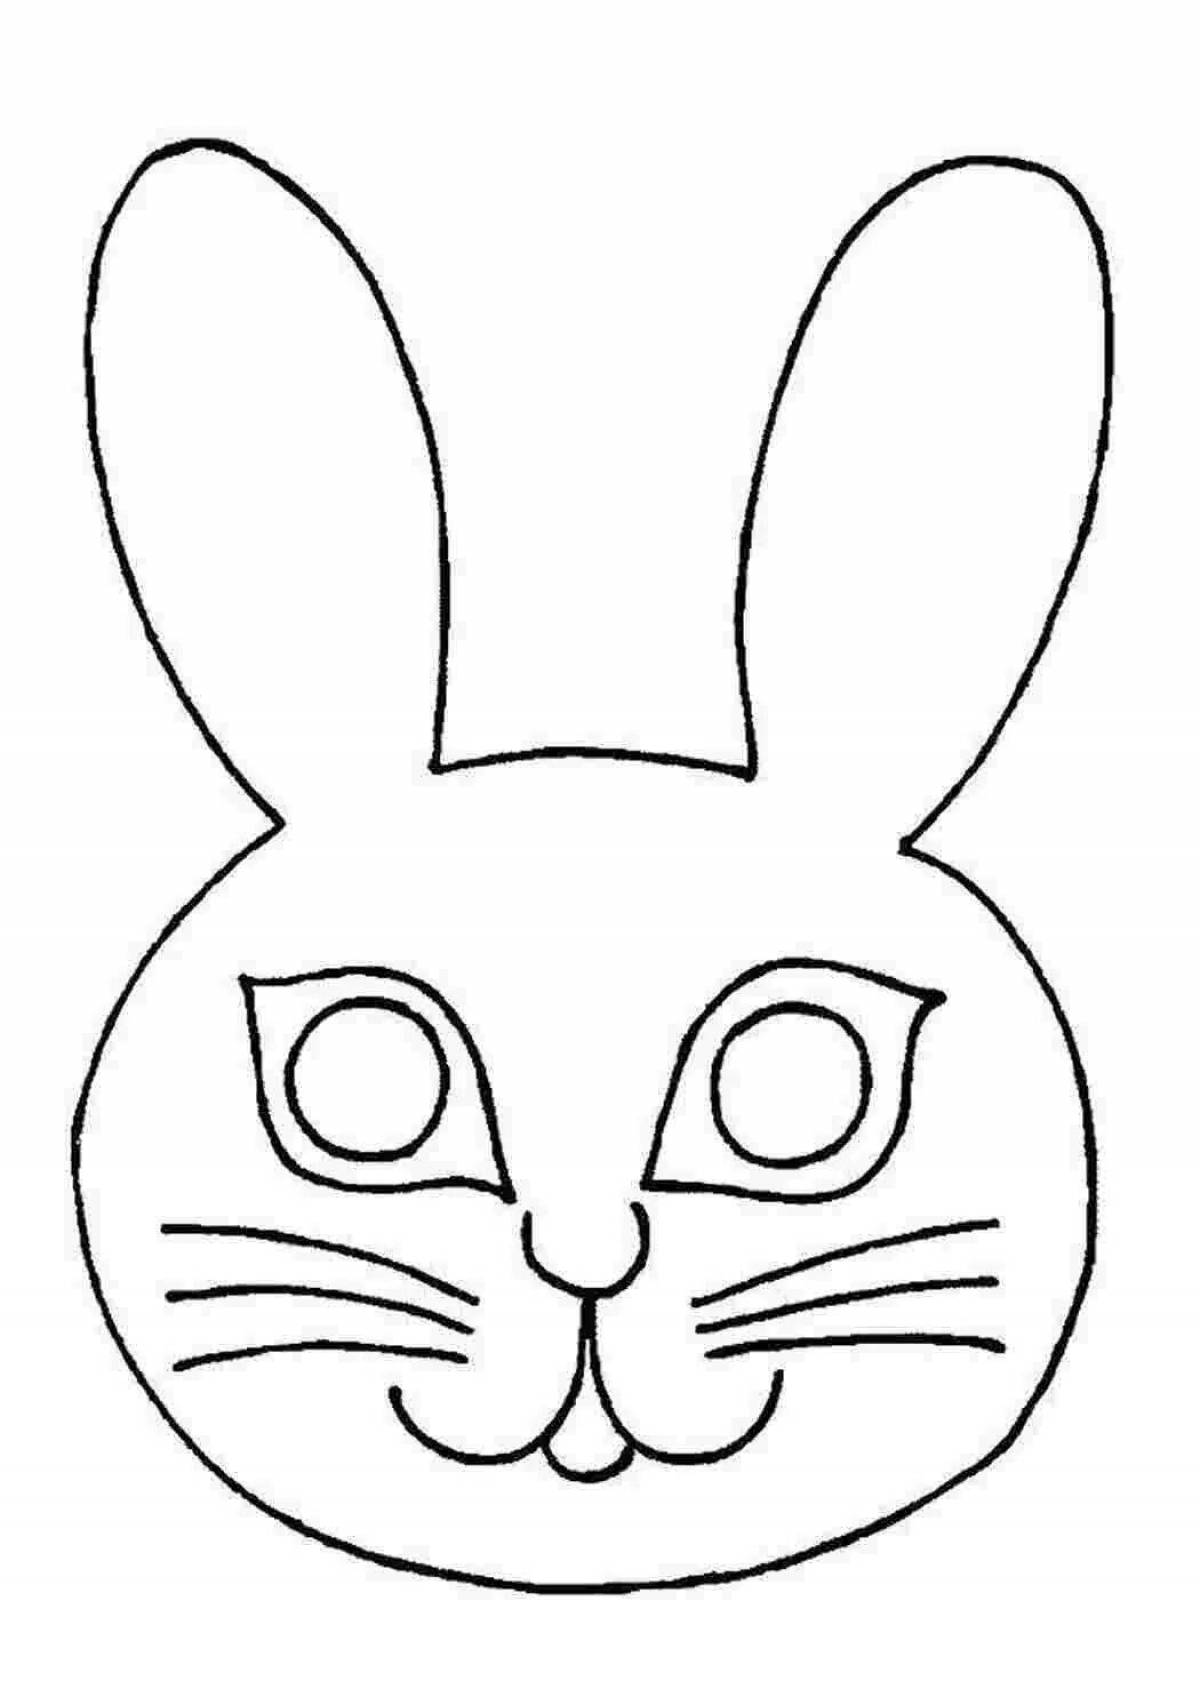 Голова зайца рисунок